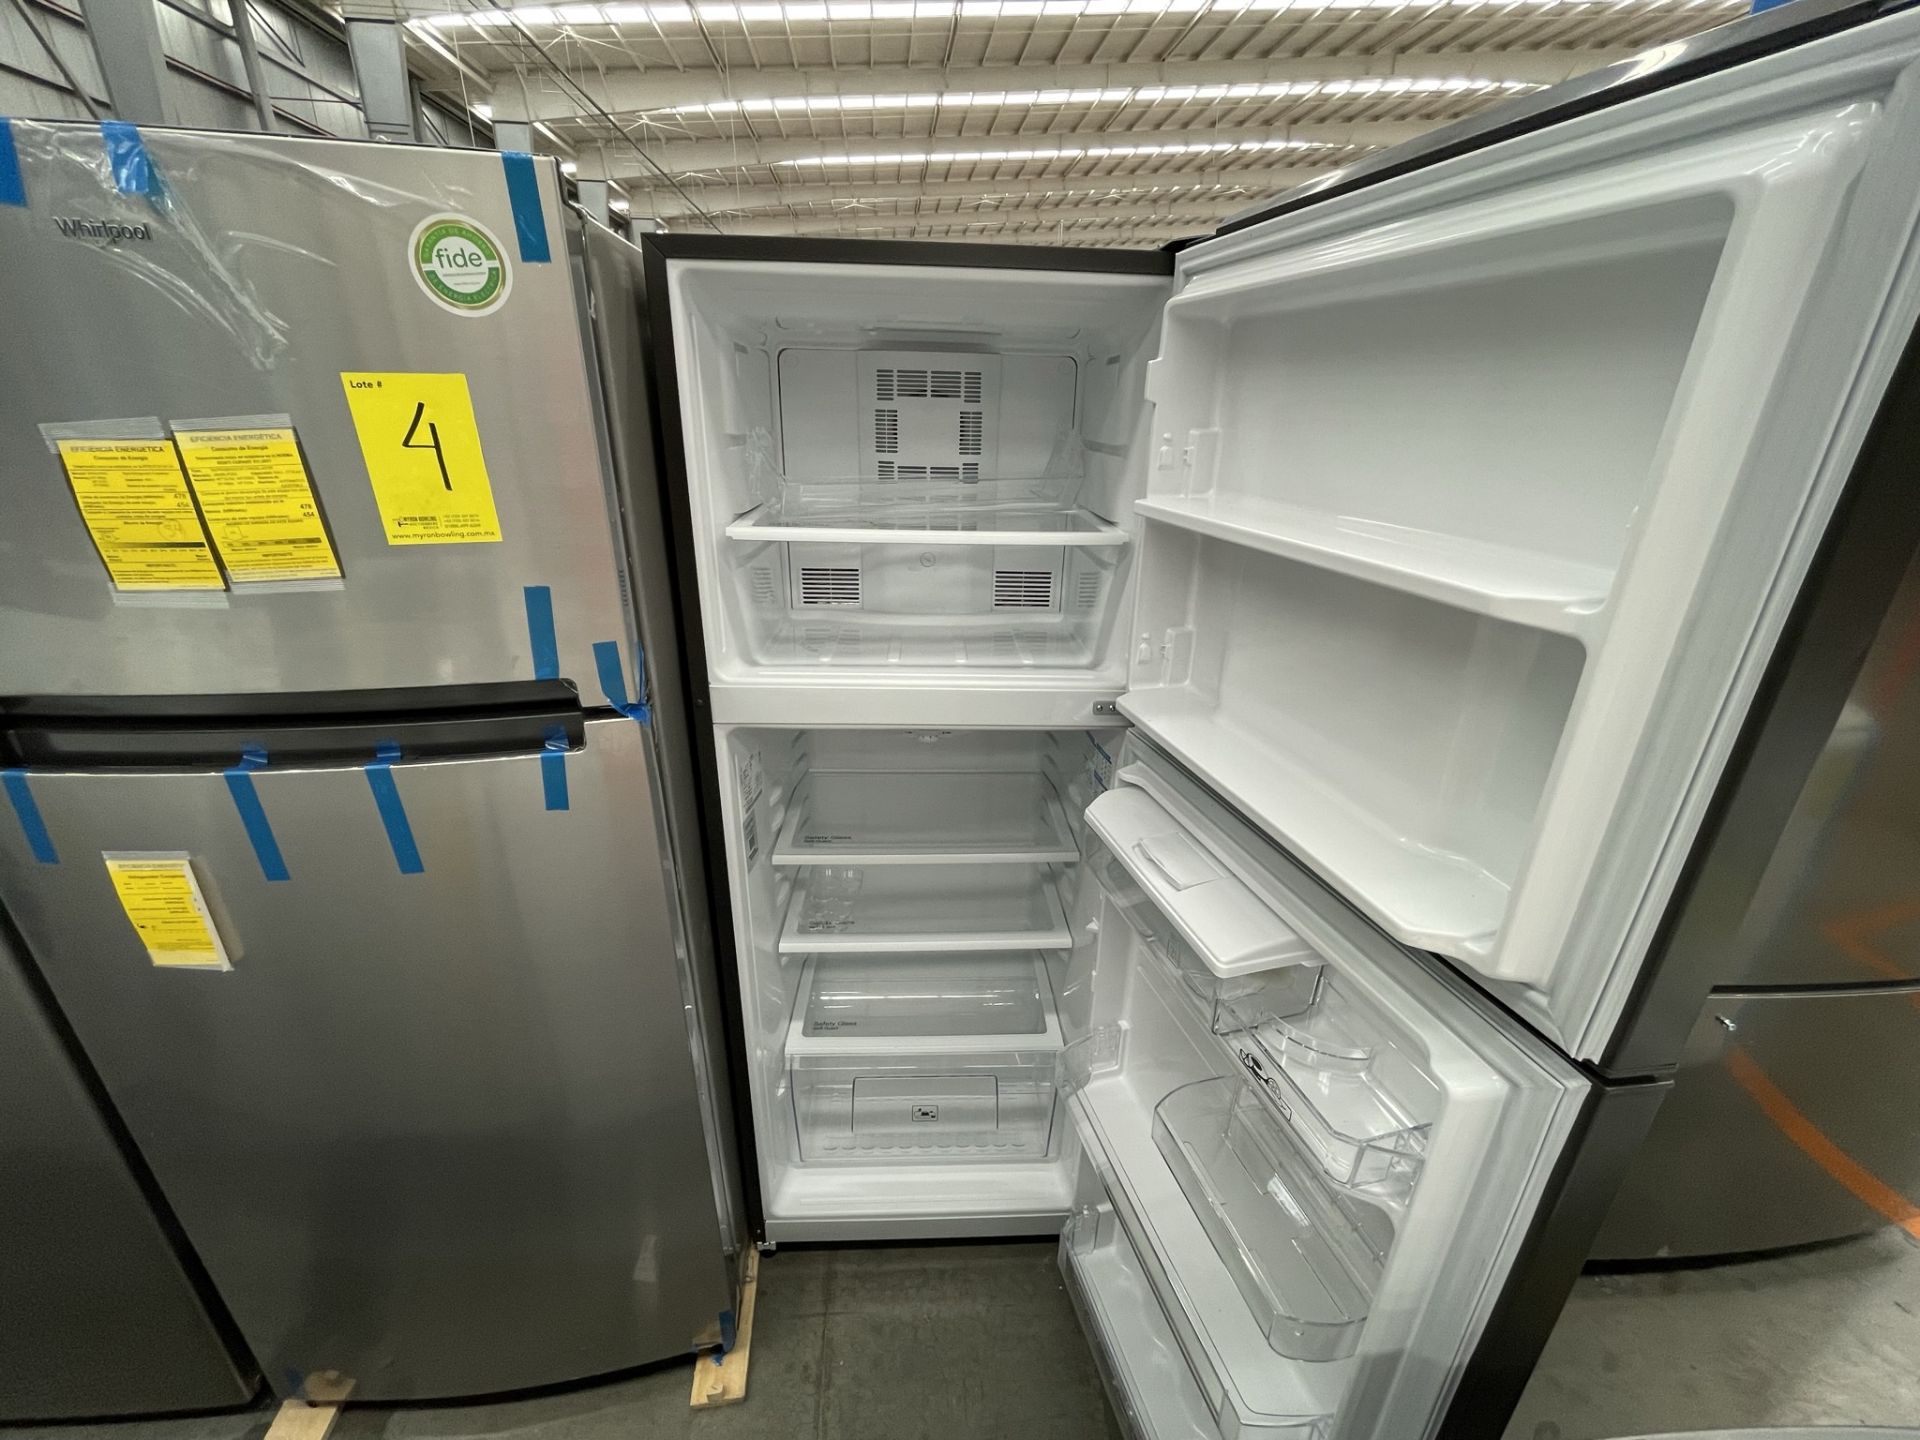 (EQUIPO NUEVO) 1 Refrigerador Con Dispensador De Agua Marca MABE, Modelo RME360FDMRDA, Serie 2210B8 - Image 4 of 9